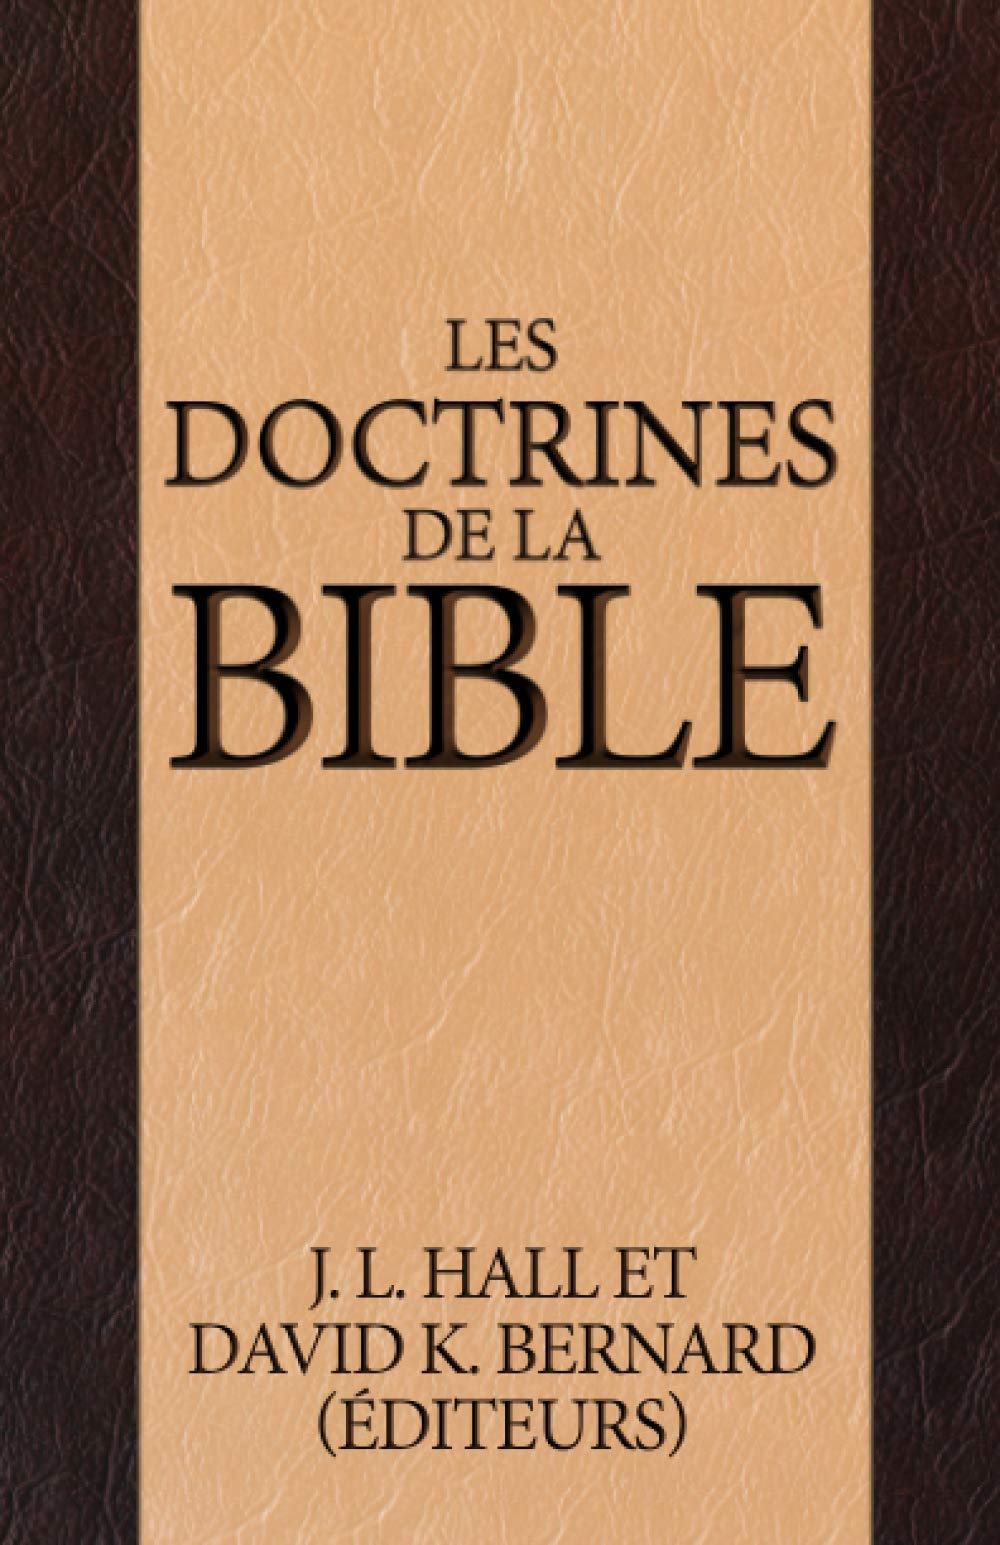 Les doctrines de la Bible (French Edition)